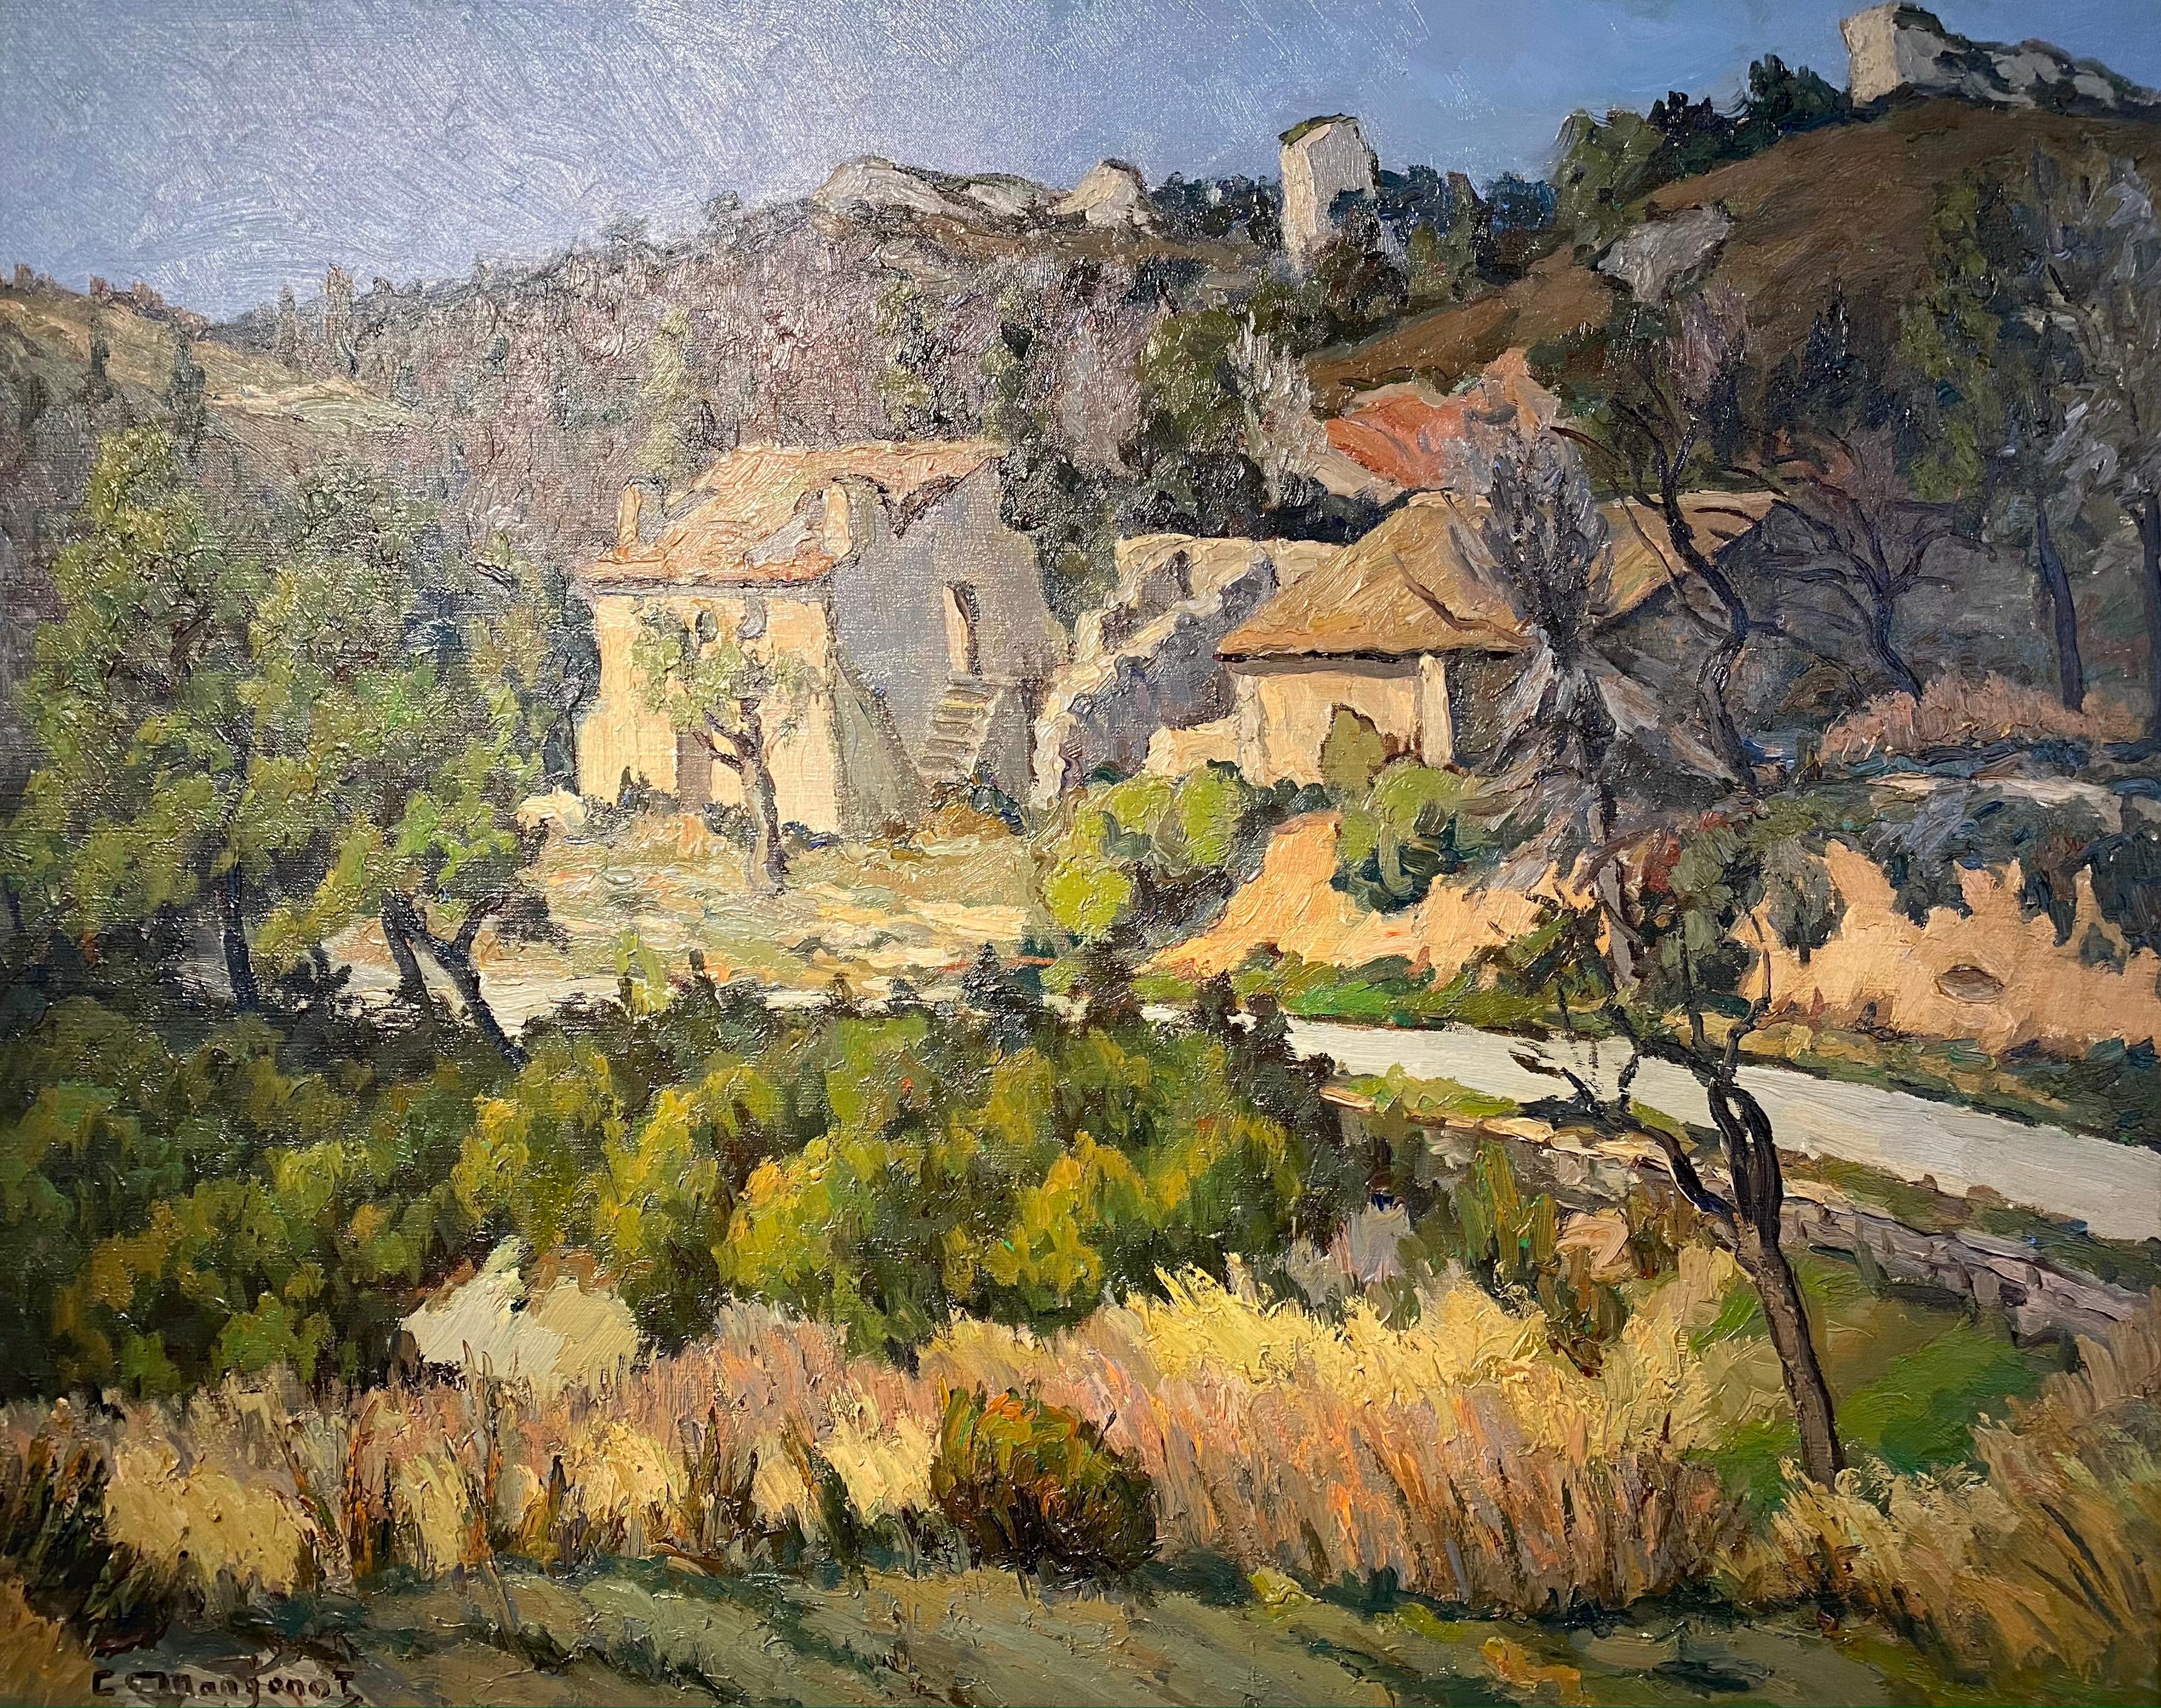 Peinture rurale française Live Groves d'un paysage d'arbres, de chalet et de verdure  - Painting de Emile Mangenot